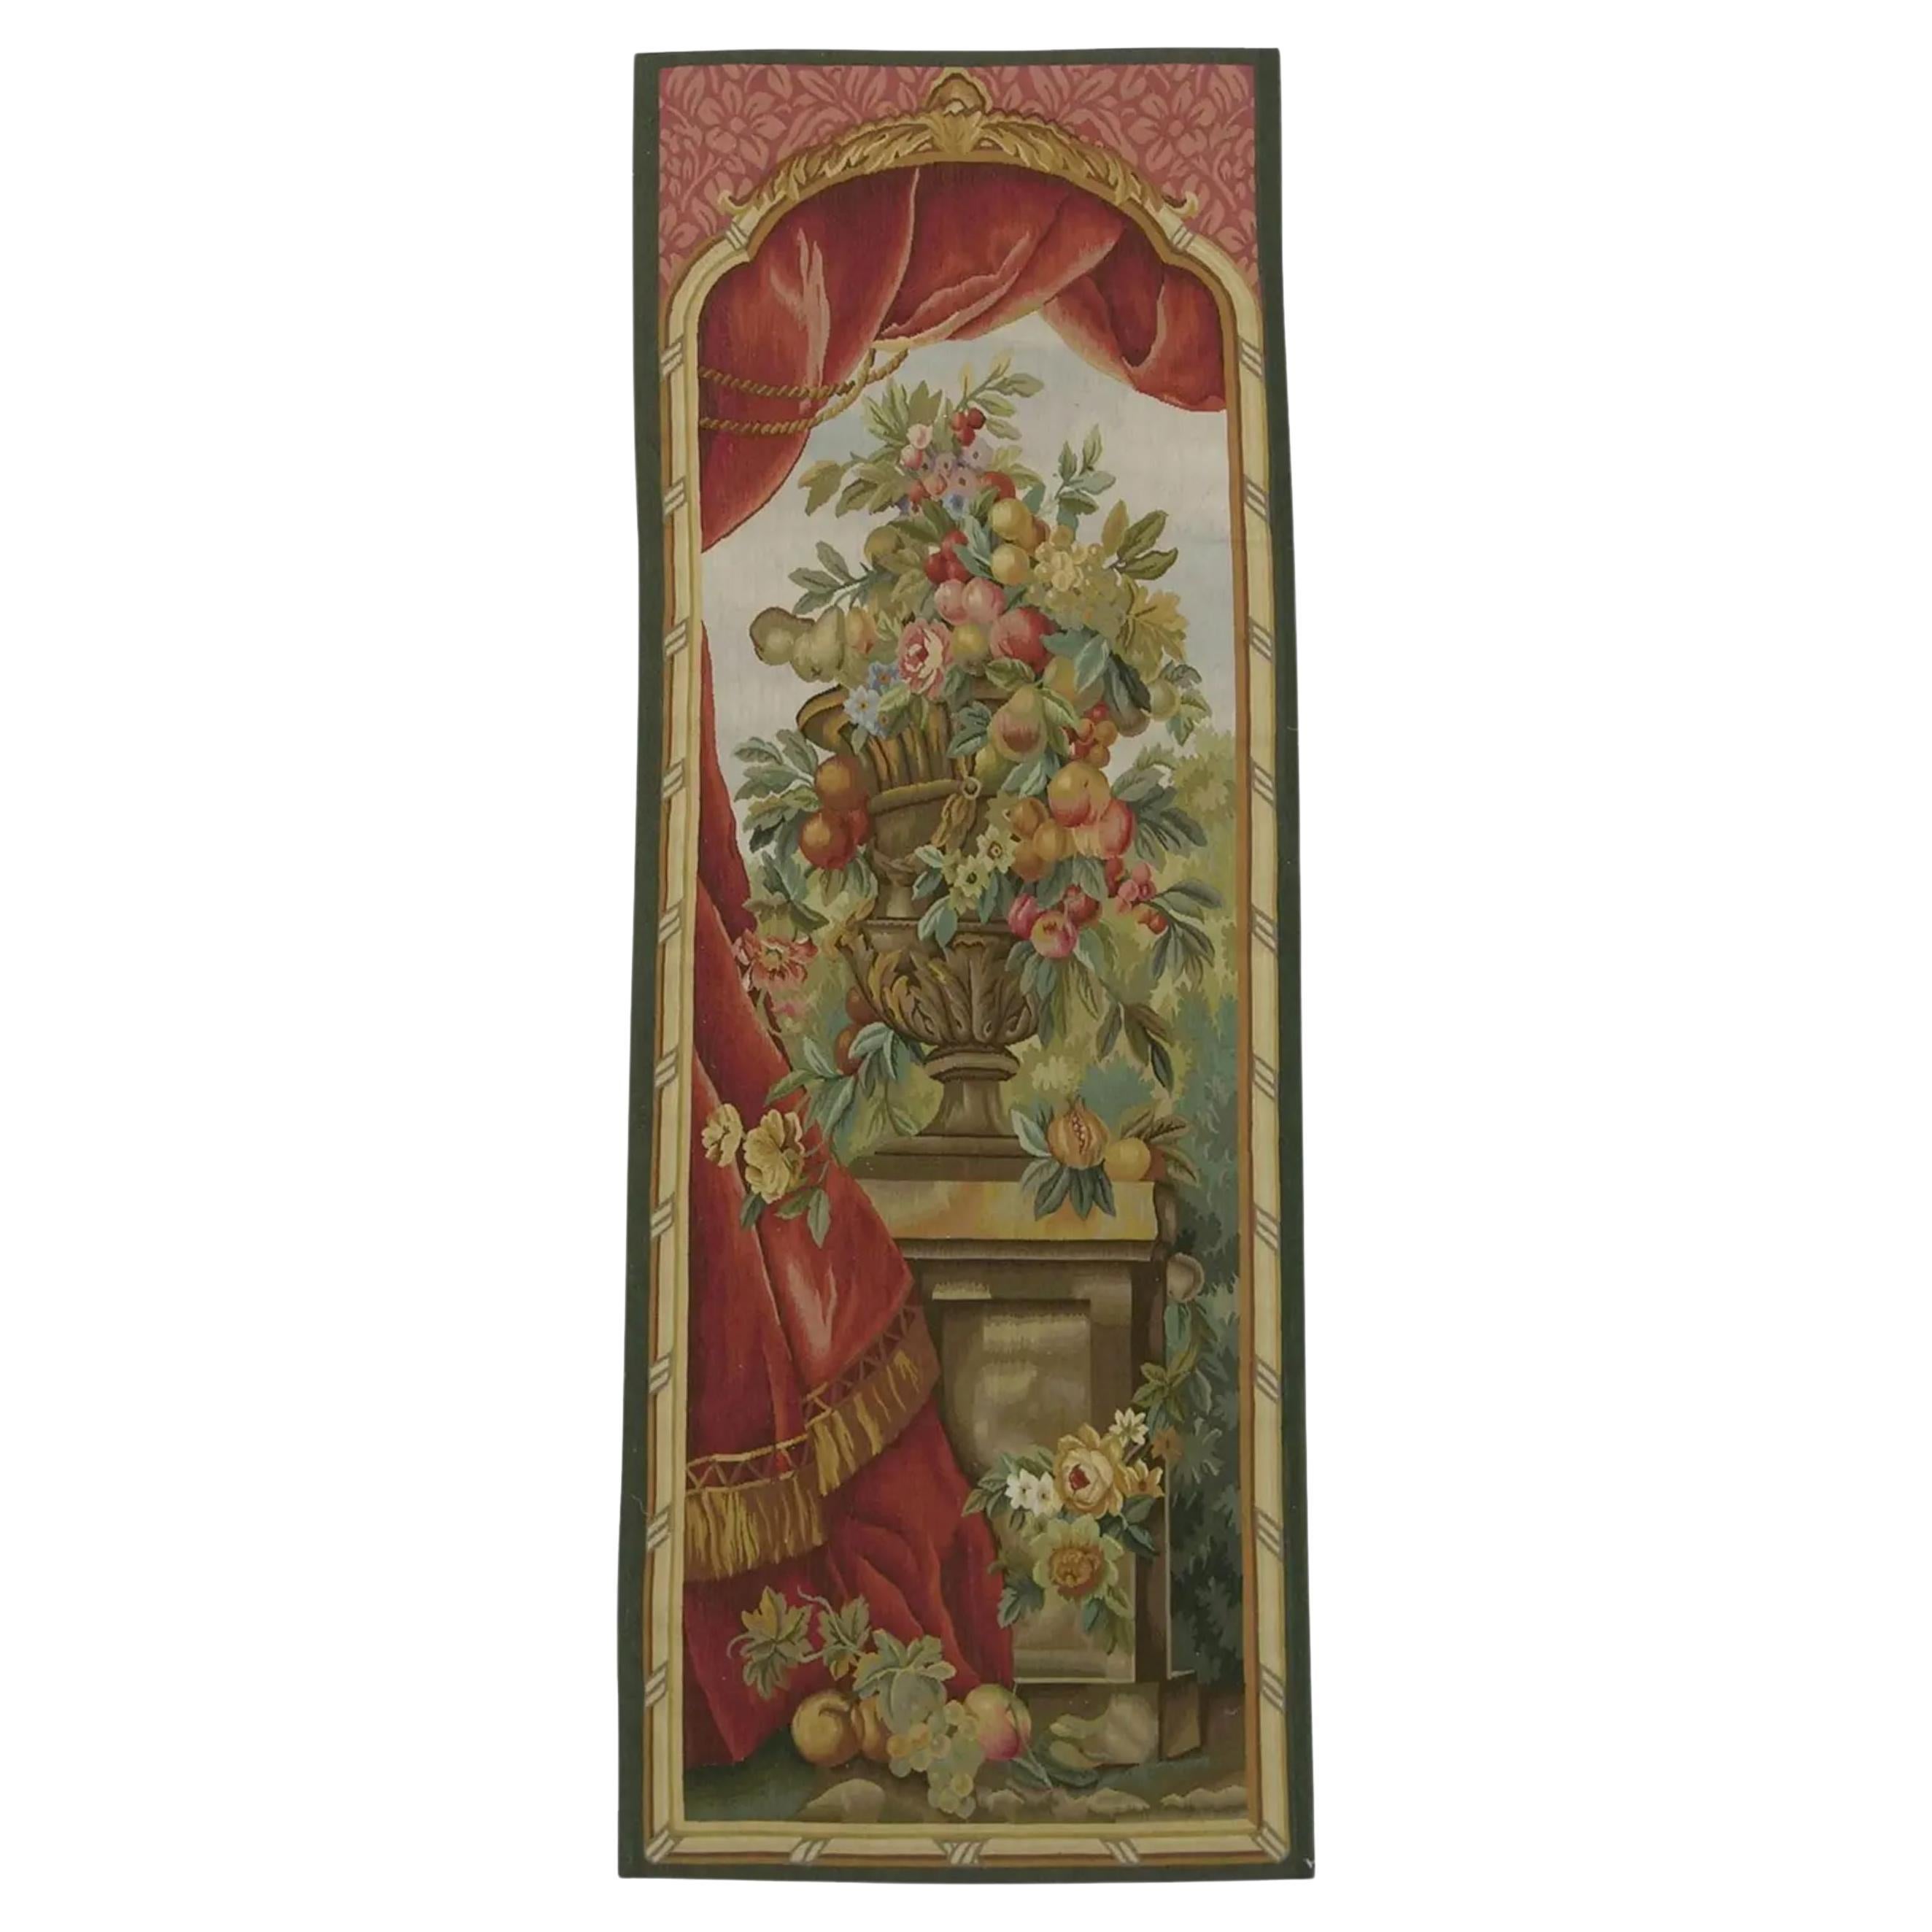 Vintage Tapestry Depicting a Royal Vase 6.2X2.3